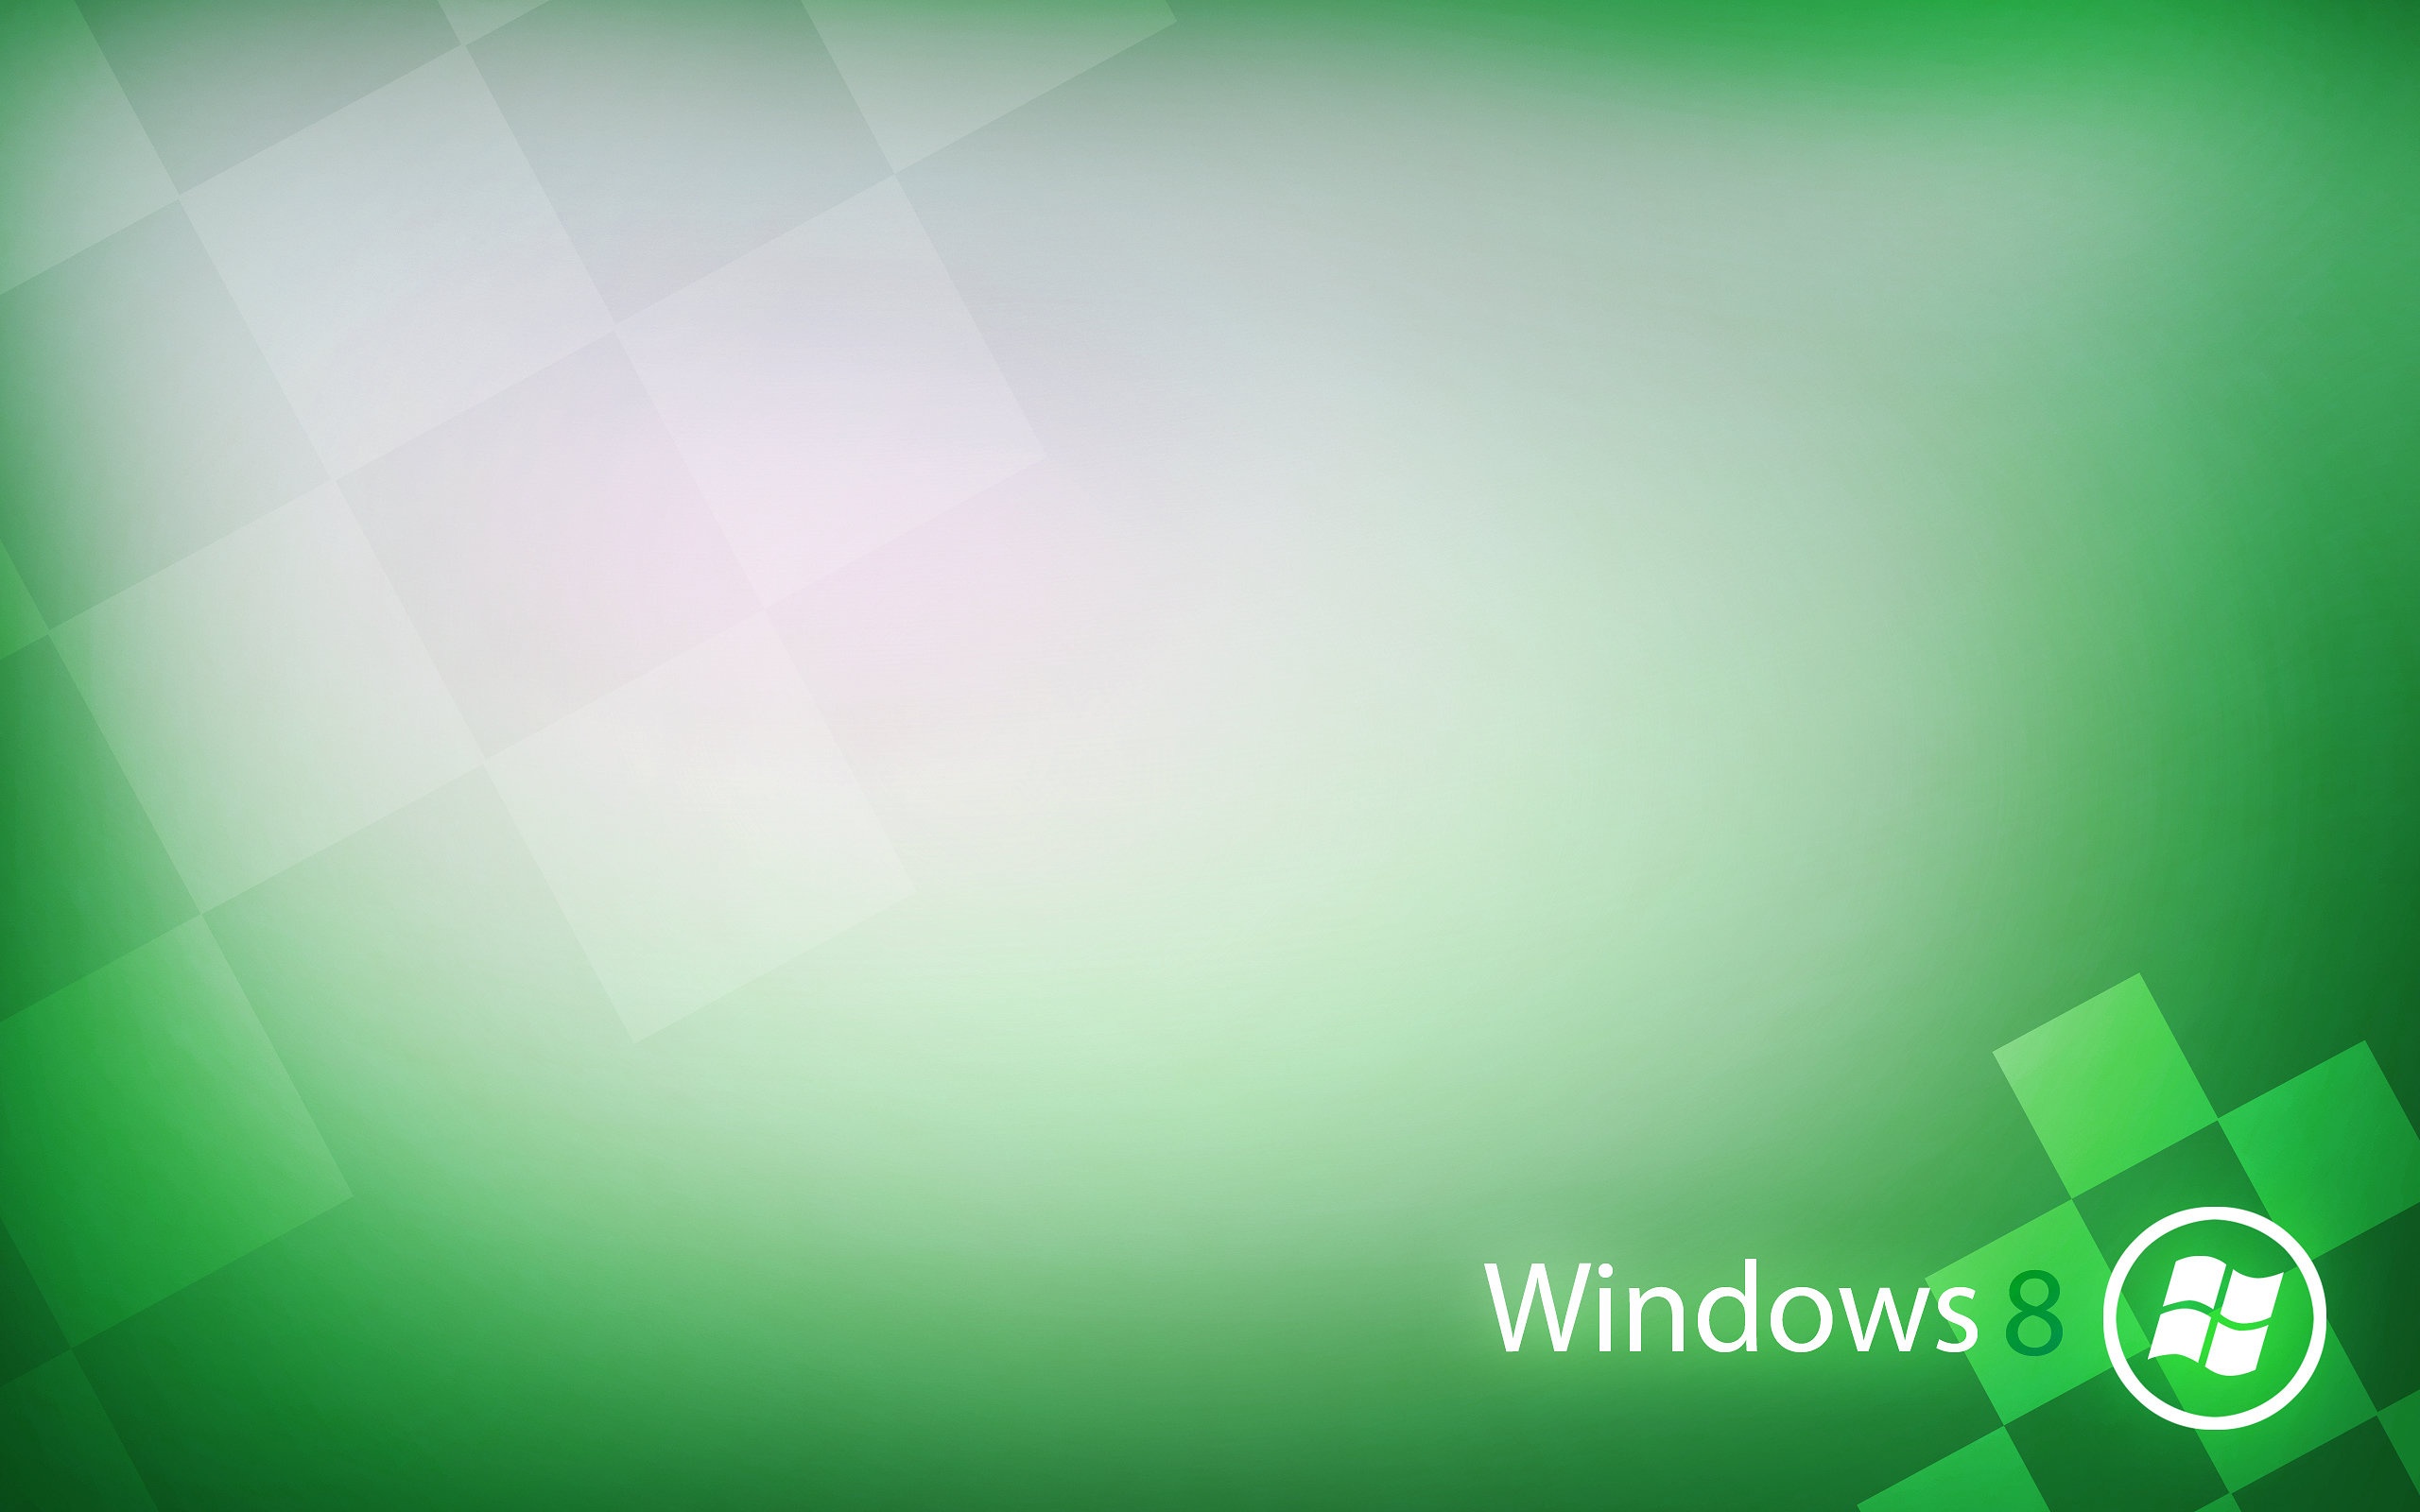 Windows 8 Metro Green #Windows 8 Metro Green wallpaper - HD